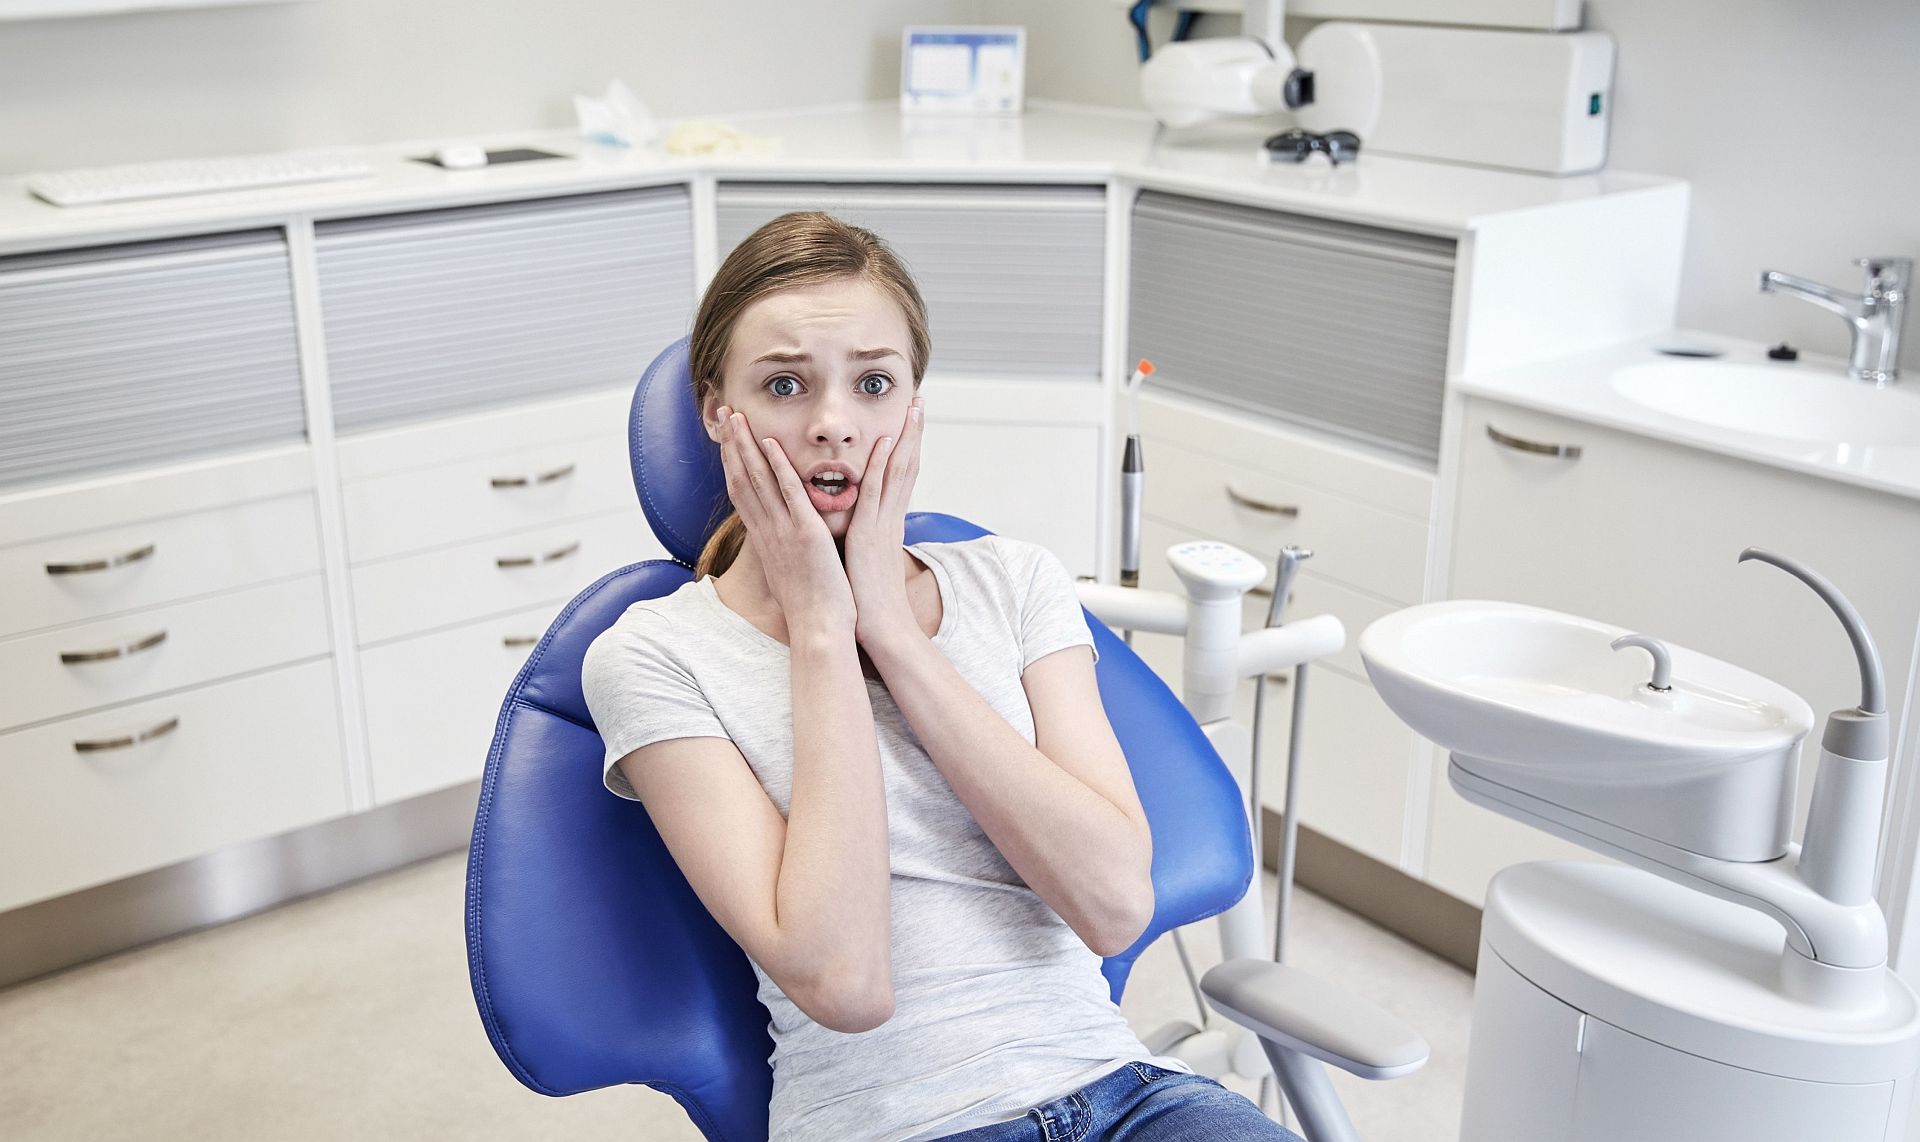 Dentist-patient communication